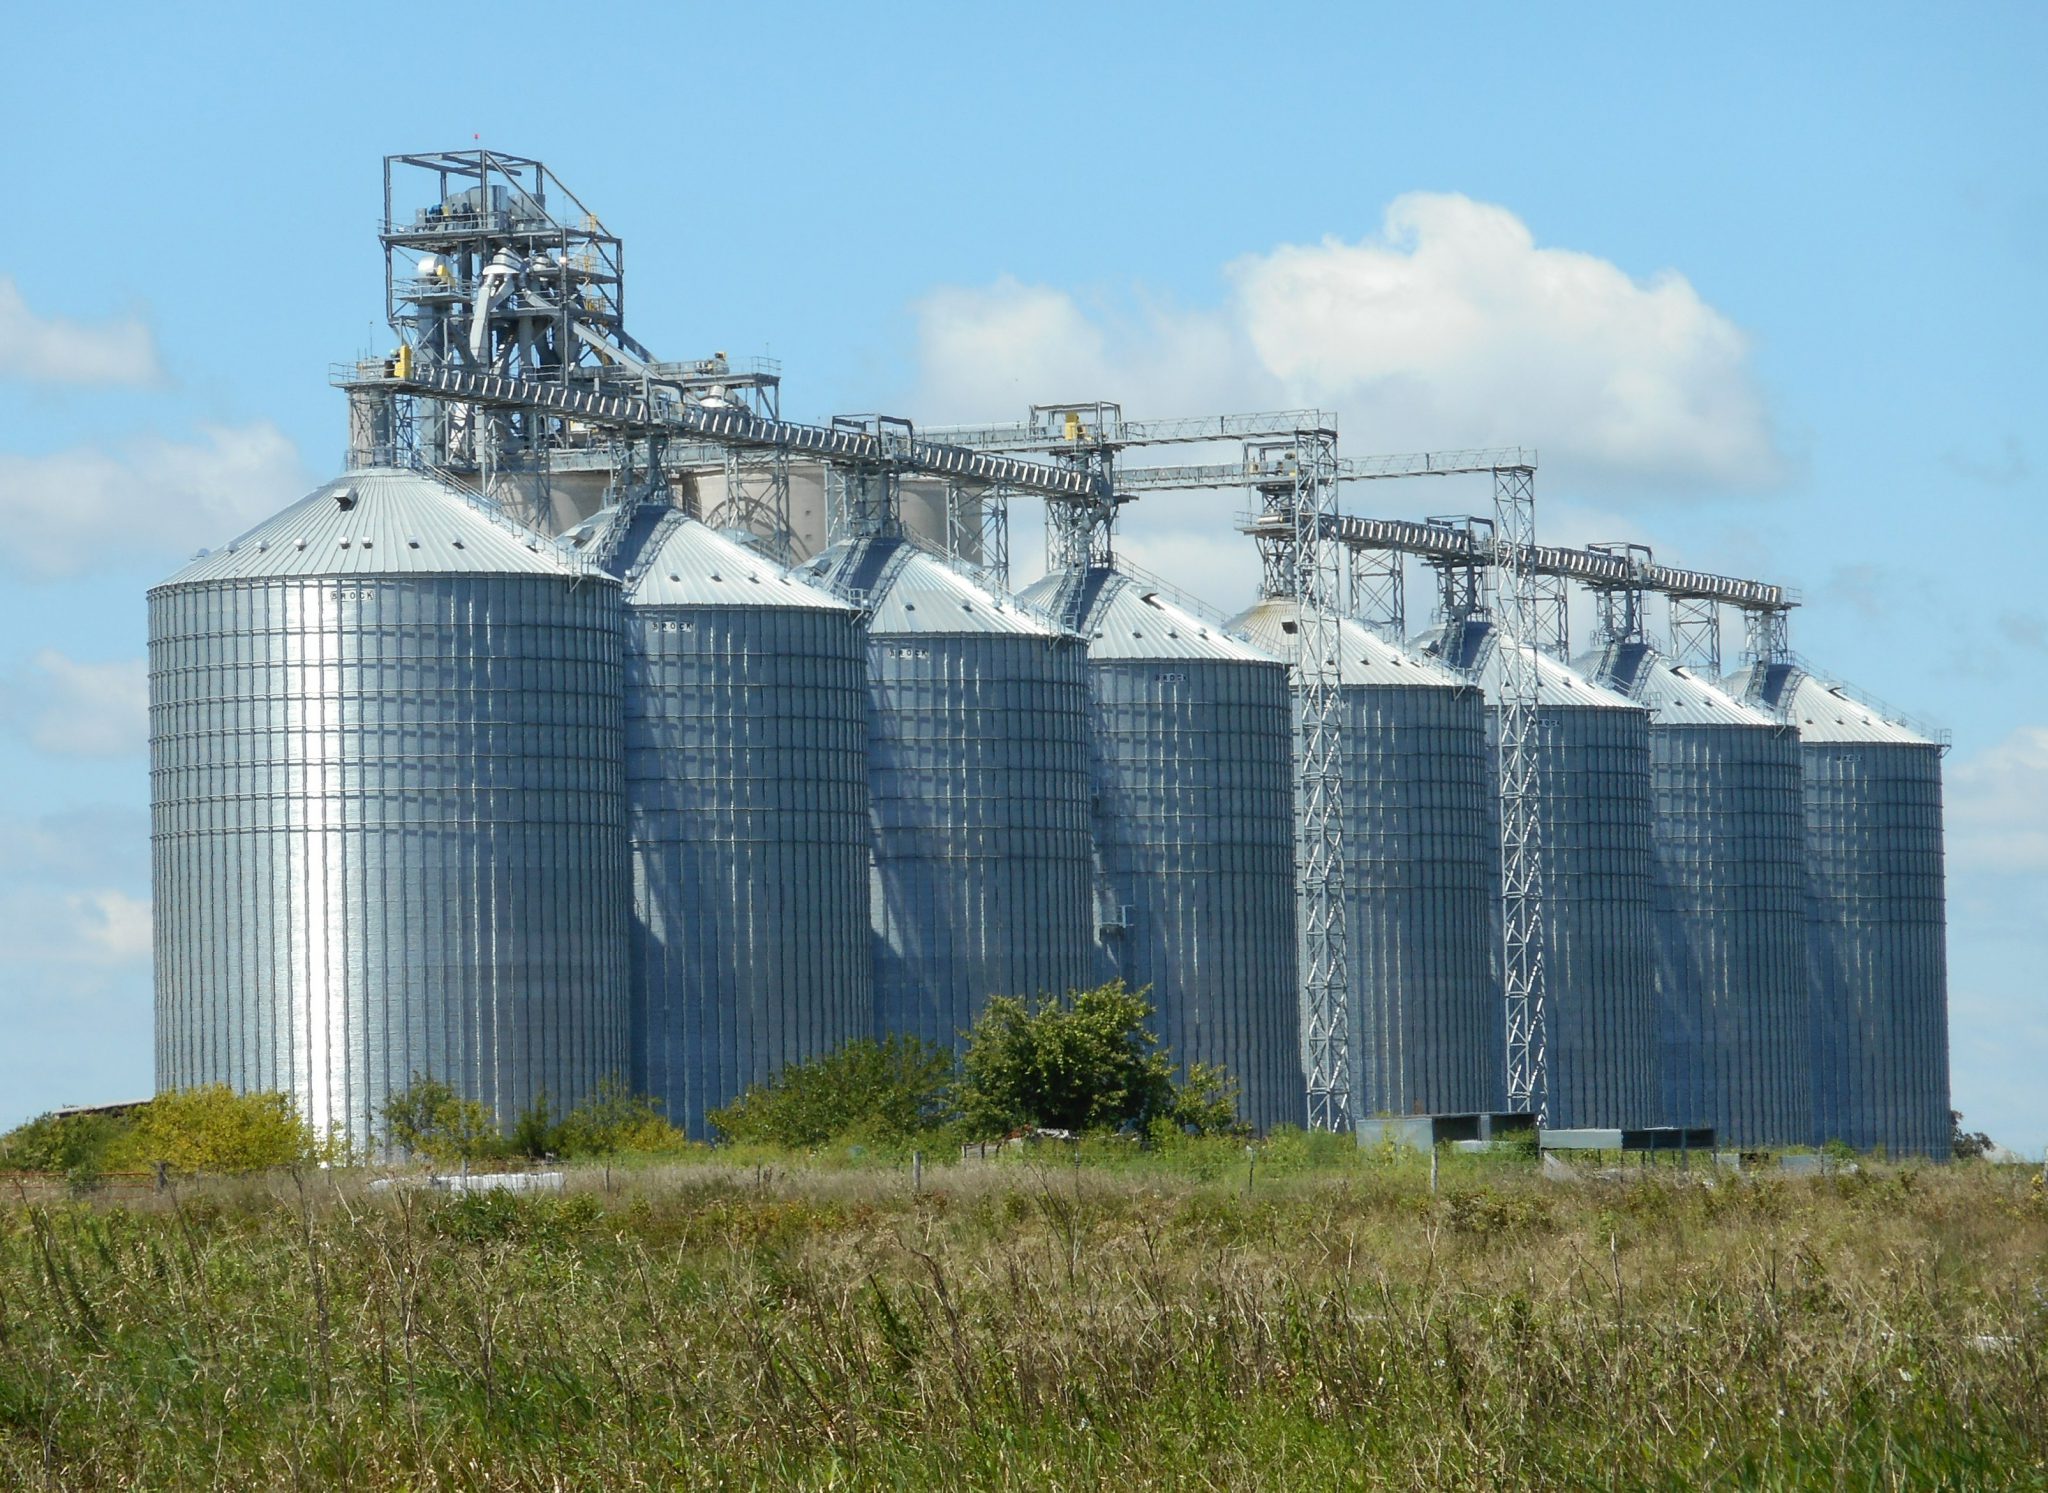 Grain silos on a field. 